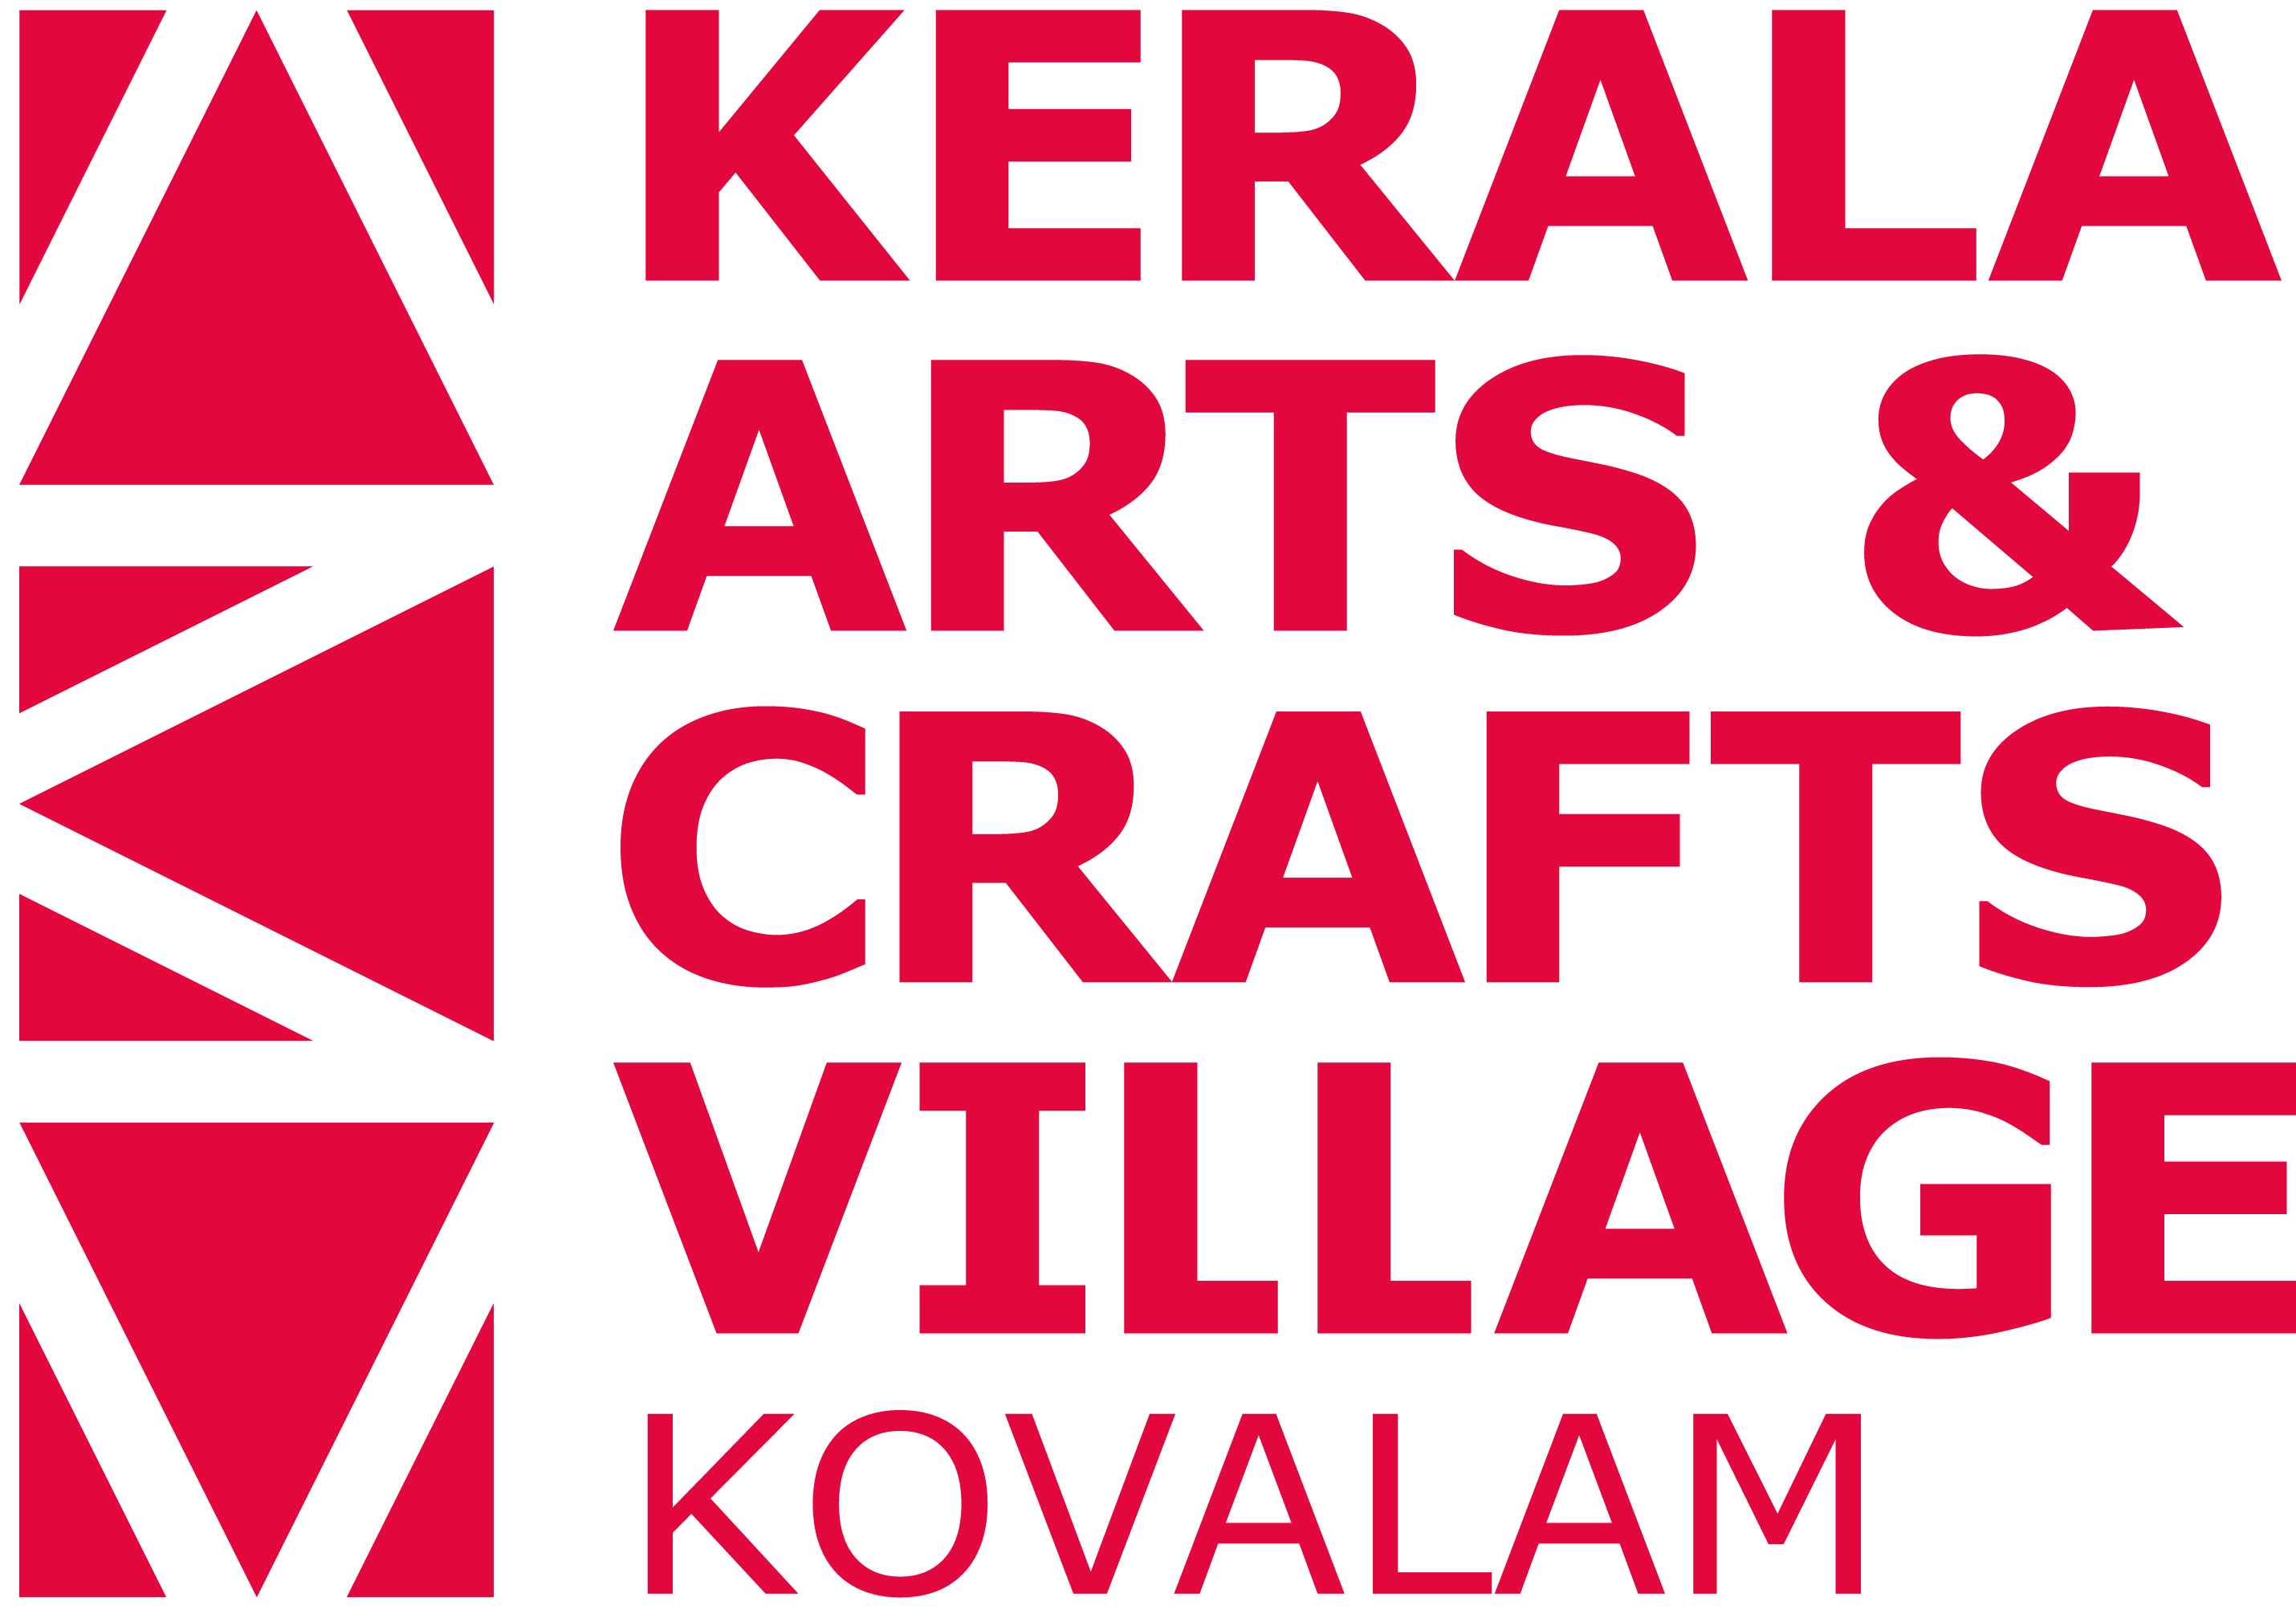 Kerala Arts and Crafts Village